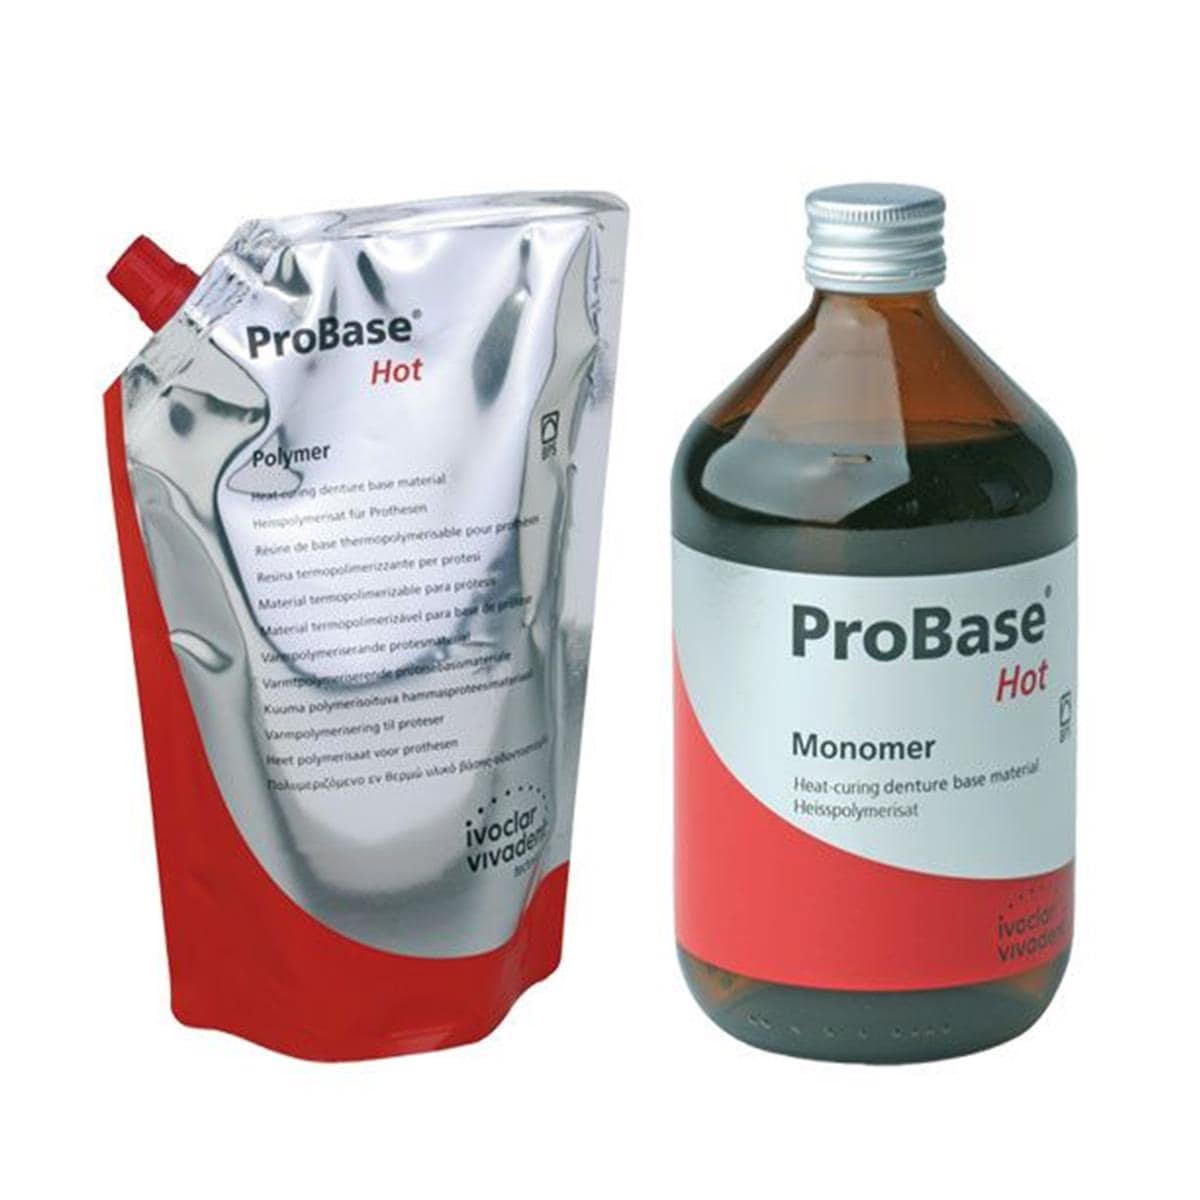 Probase Hot IVOCLAR - La portion de 2,5 kg + 1 l - Pink